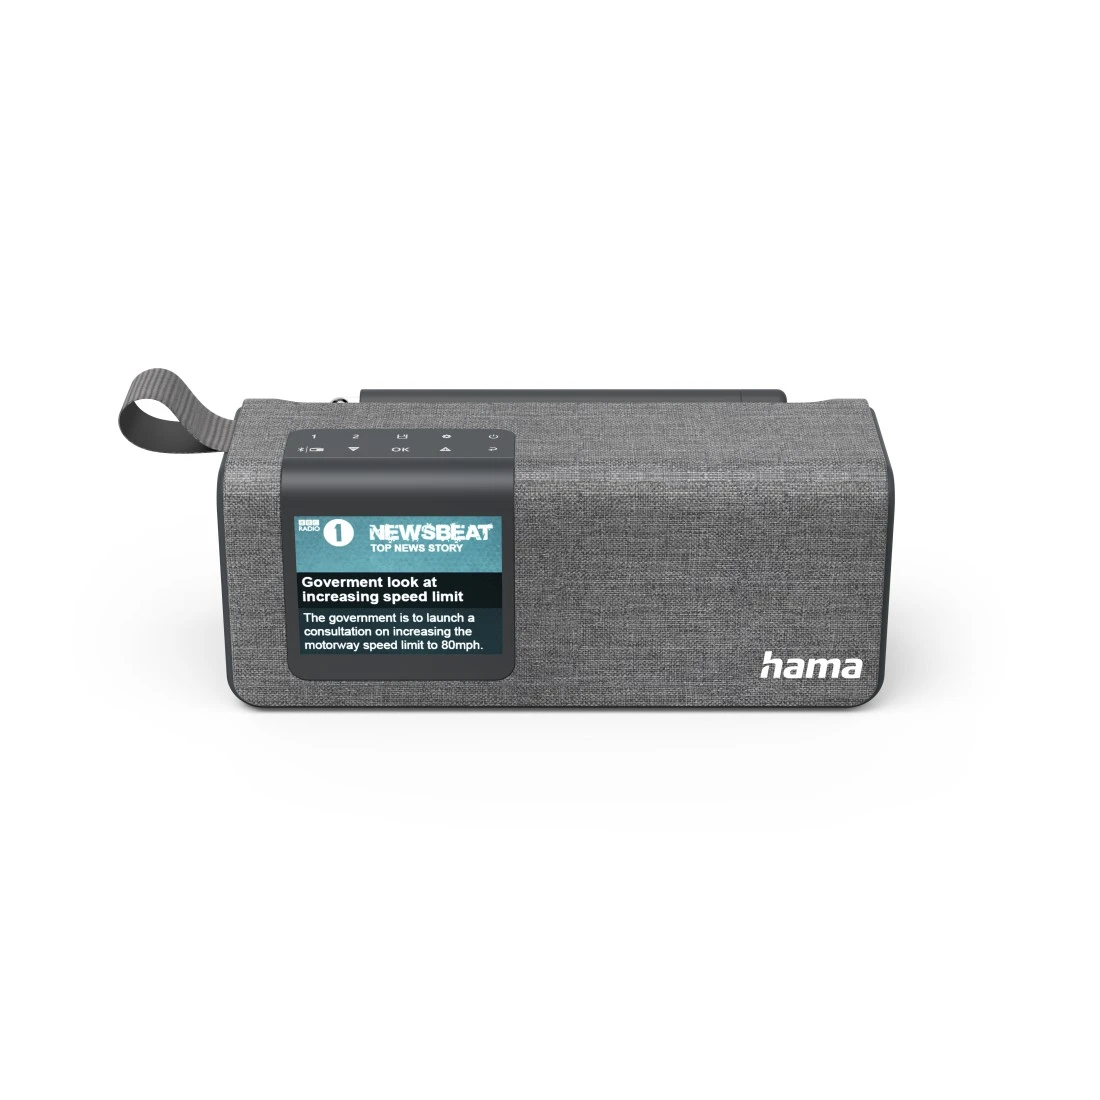 Radio numérique DR200BT, FM/DAB/DAB+/Bluetooth®/Fonct. sur